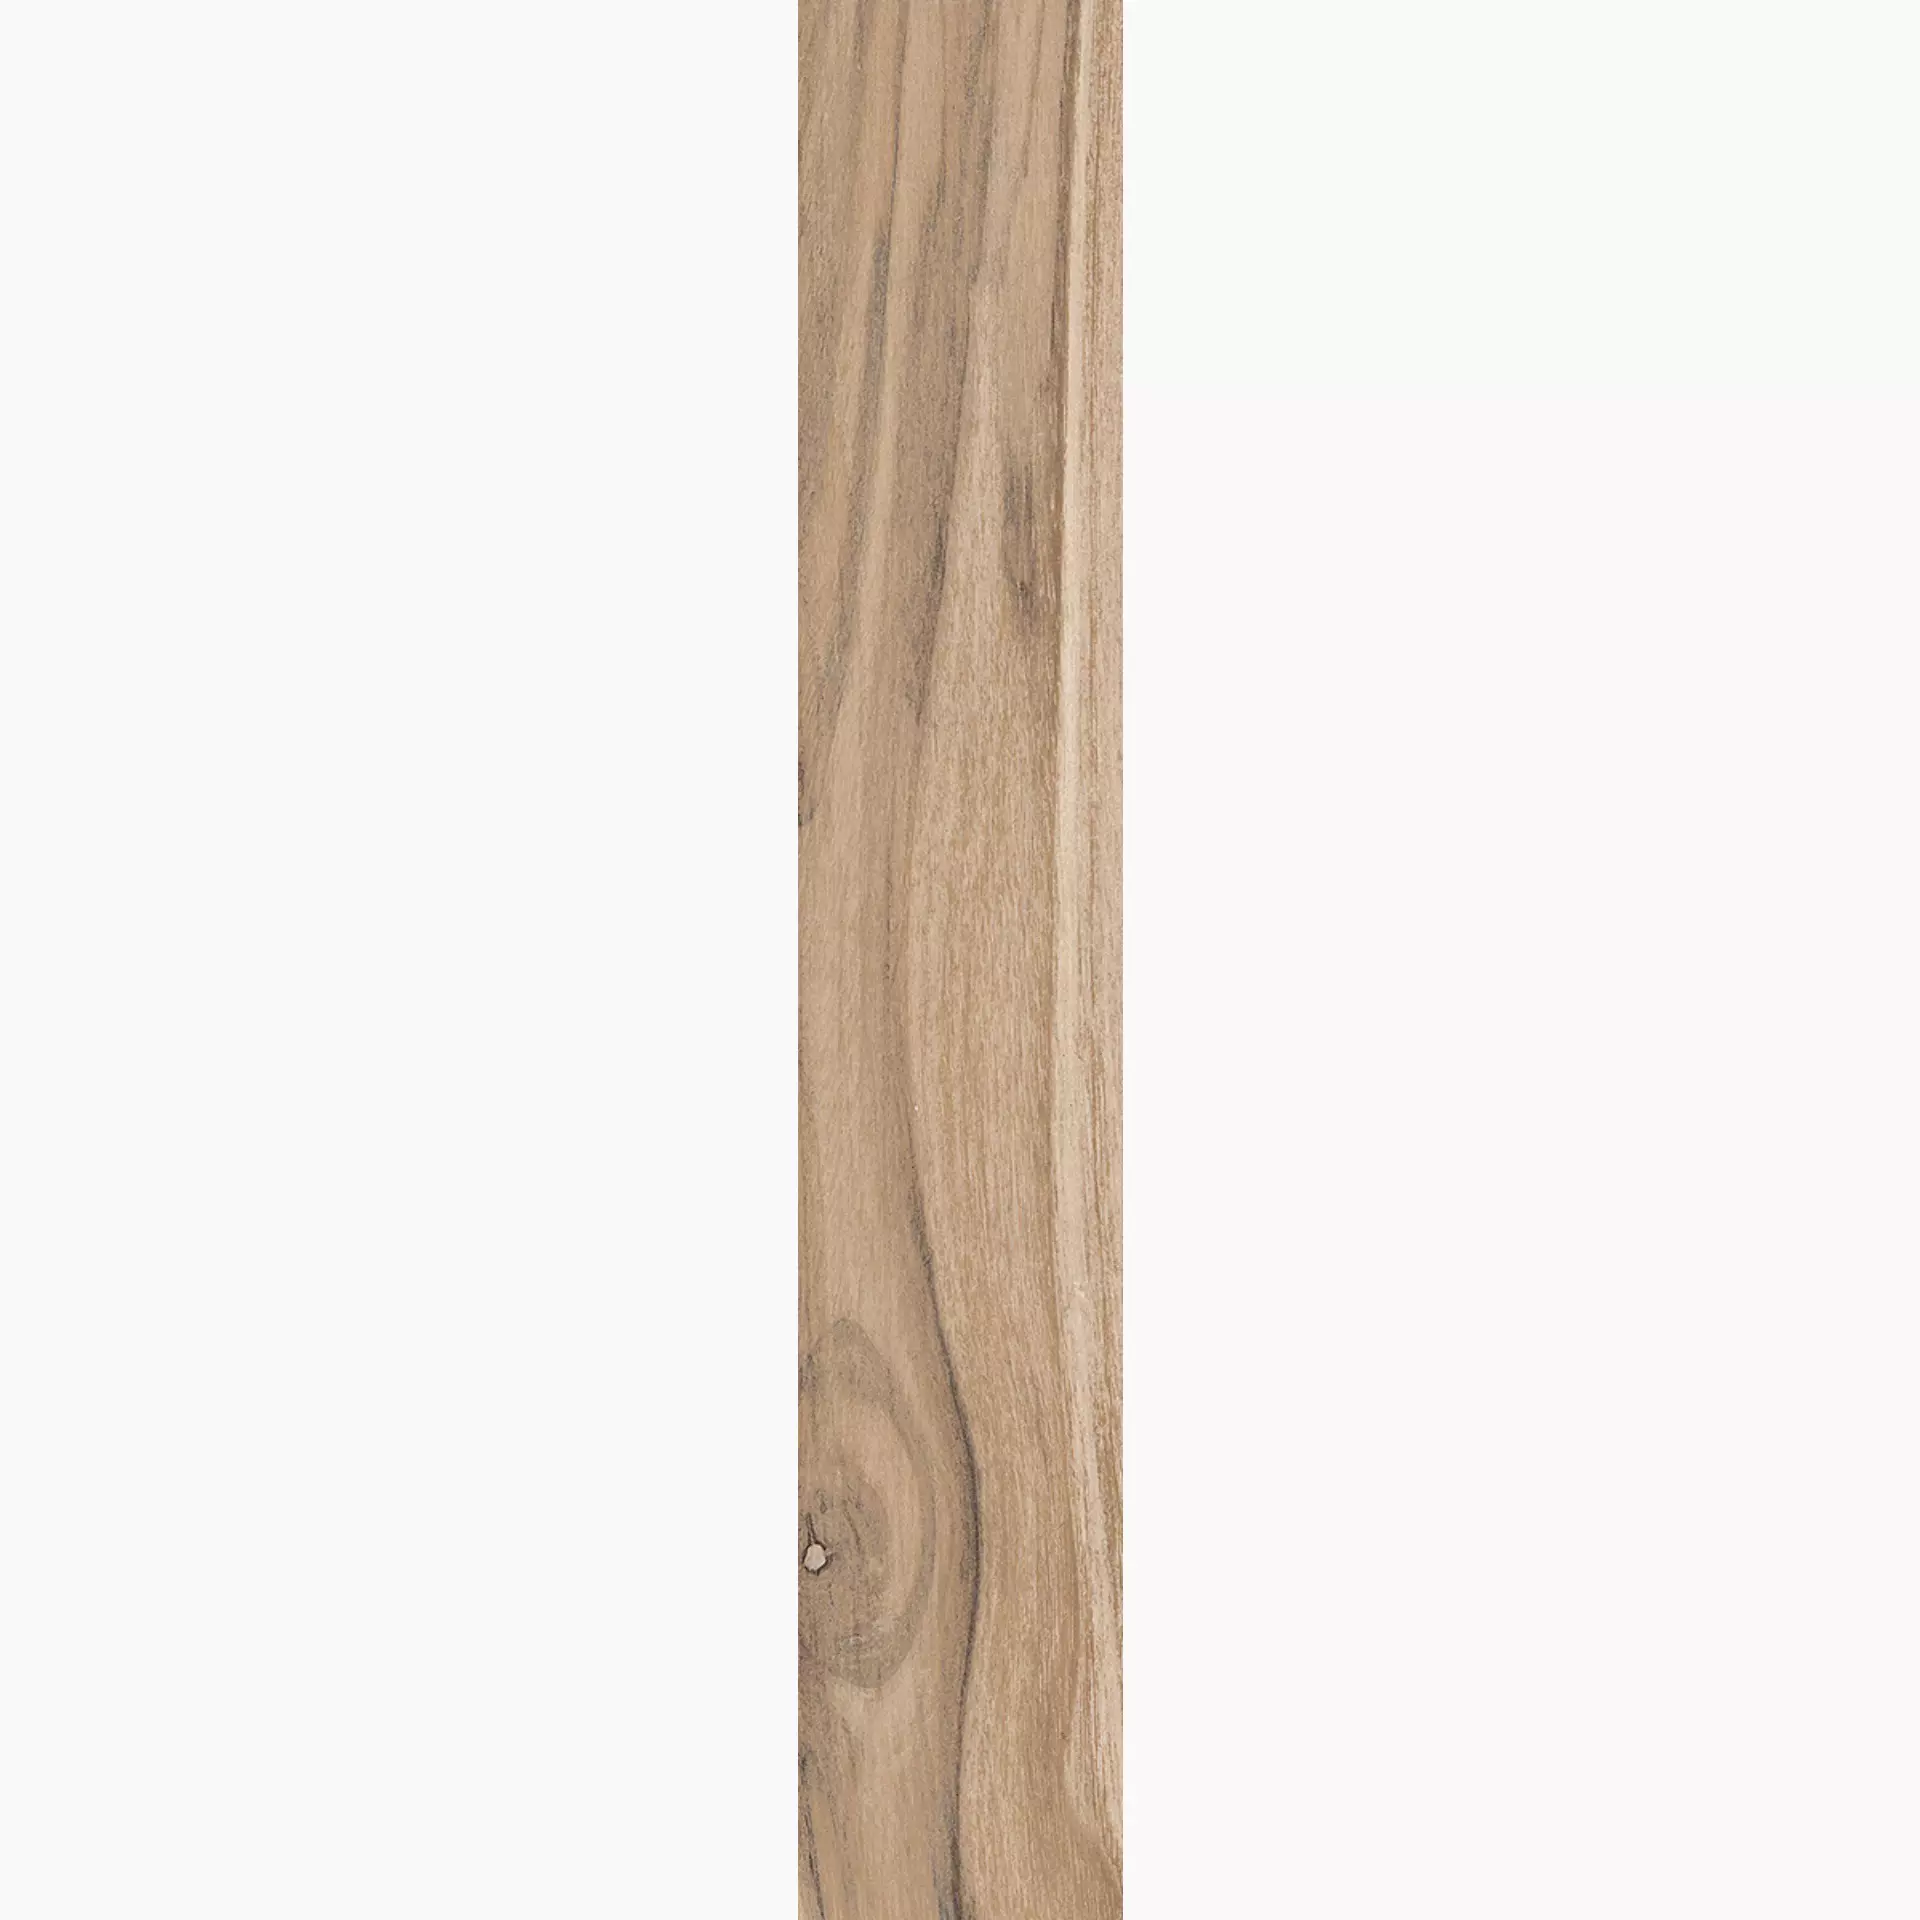 Rondine Living Marrone Naturale J86349 7,5x45cm 9,5mm